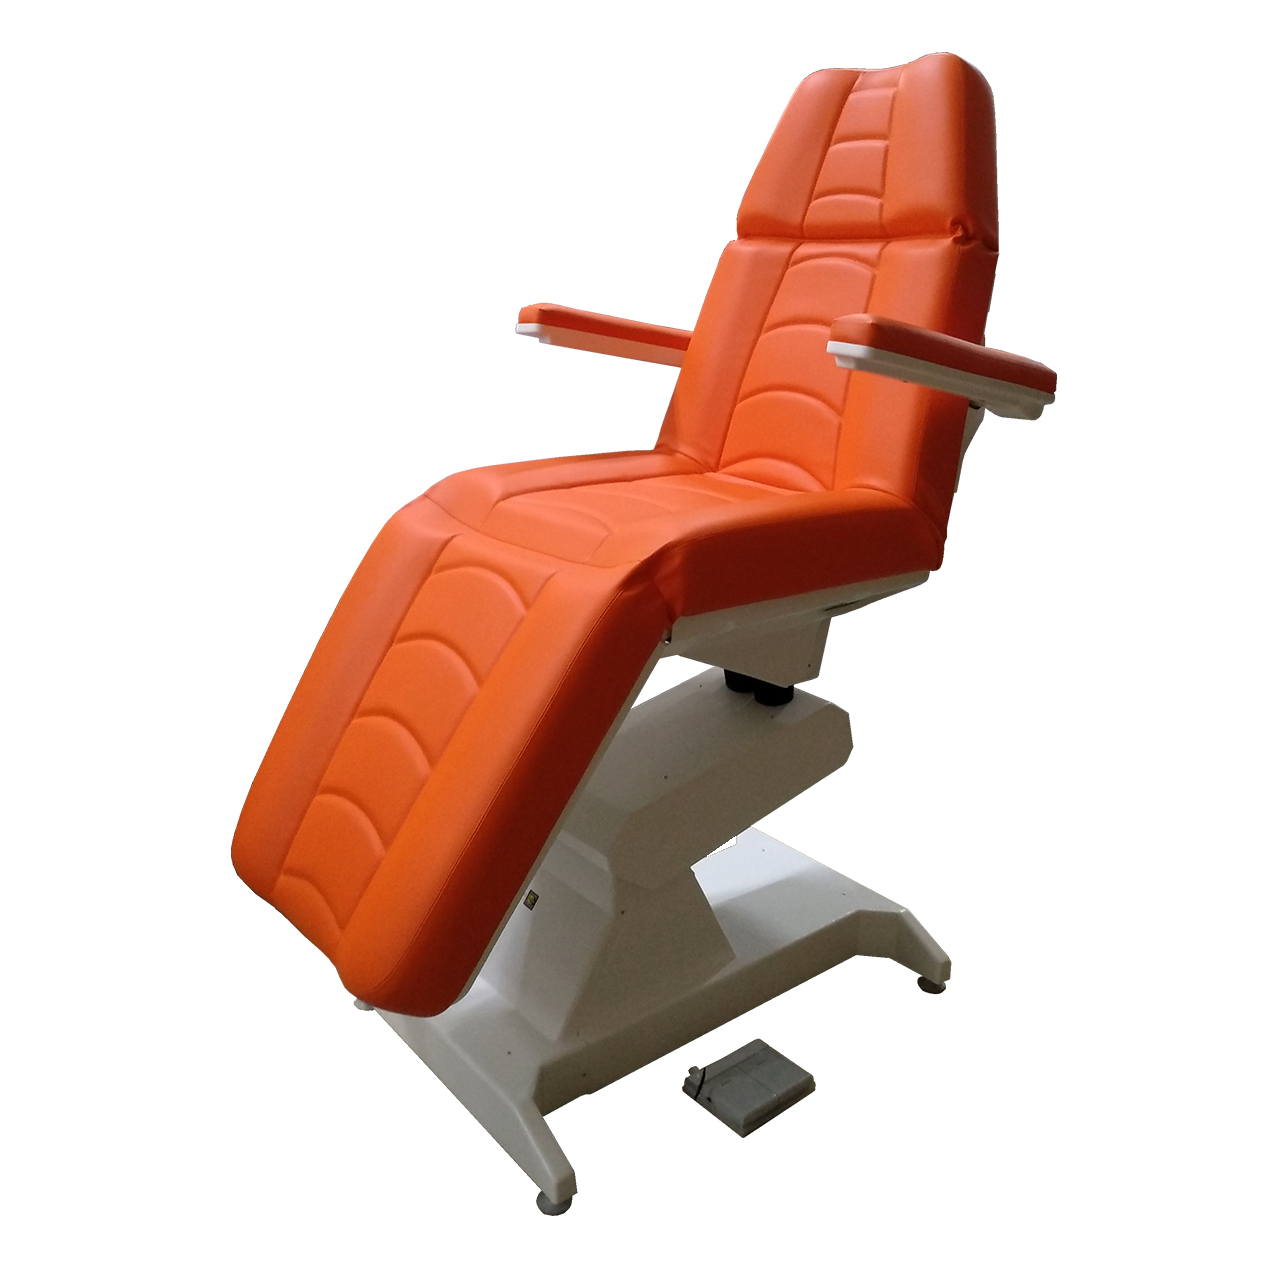 Кресло процедурное с электроприводом ОД-2, с прямыми откидными подлокотниками, с ножной педалью управления.